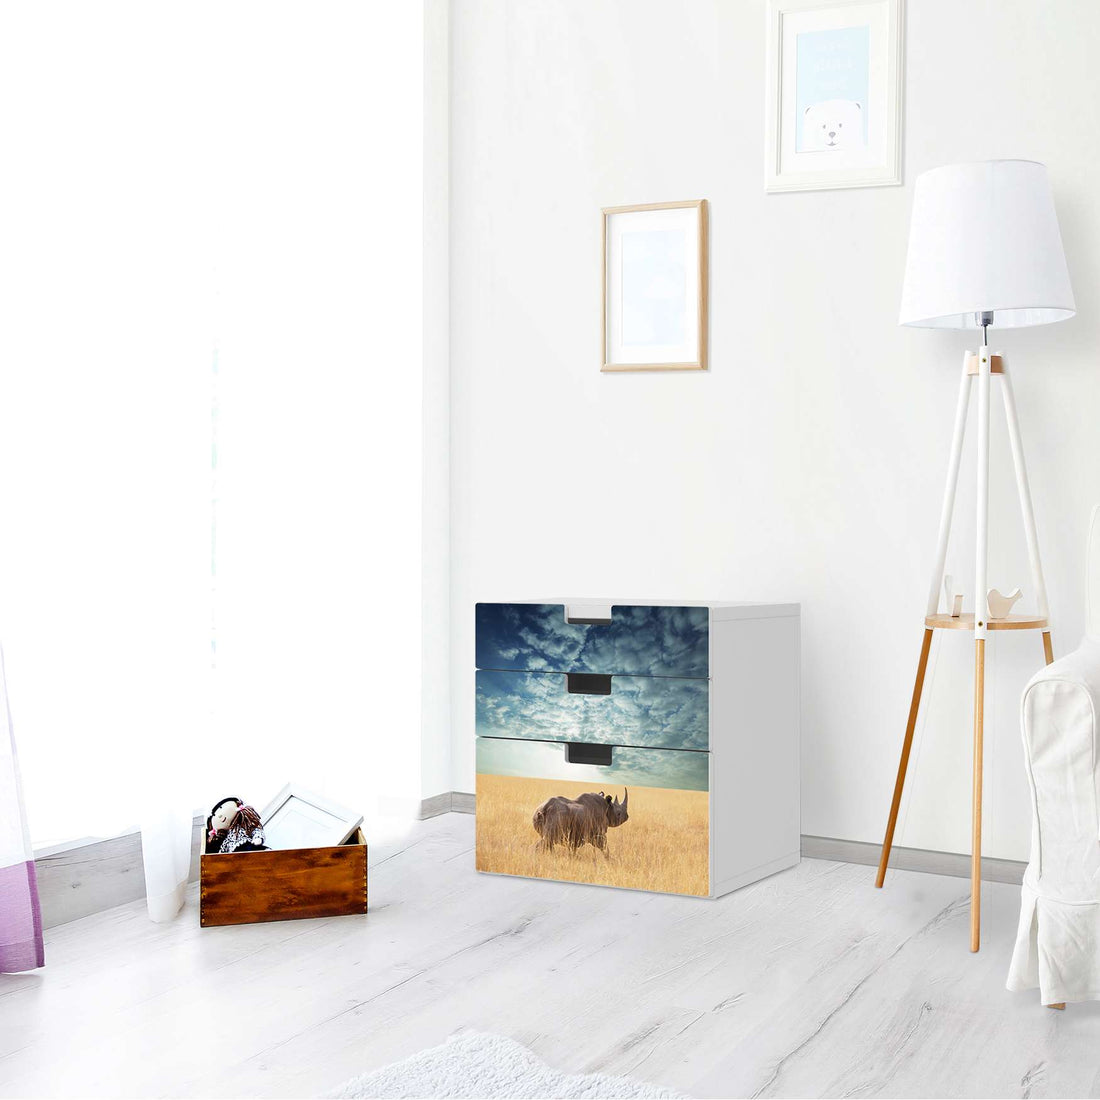 Folie für Möbel Rhino - IKEA Stuva Kommode - 3 Schubladen (Kombination 1) - Wohnzimmer